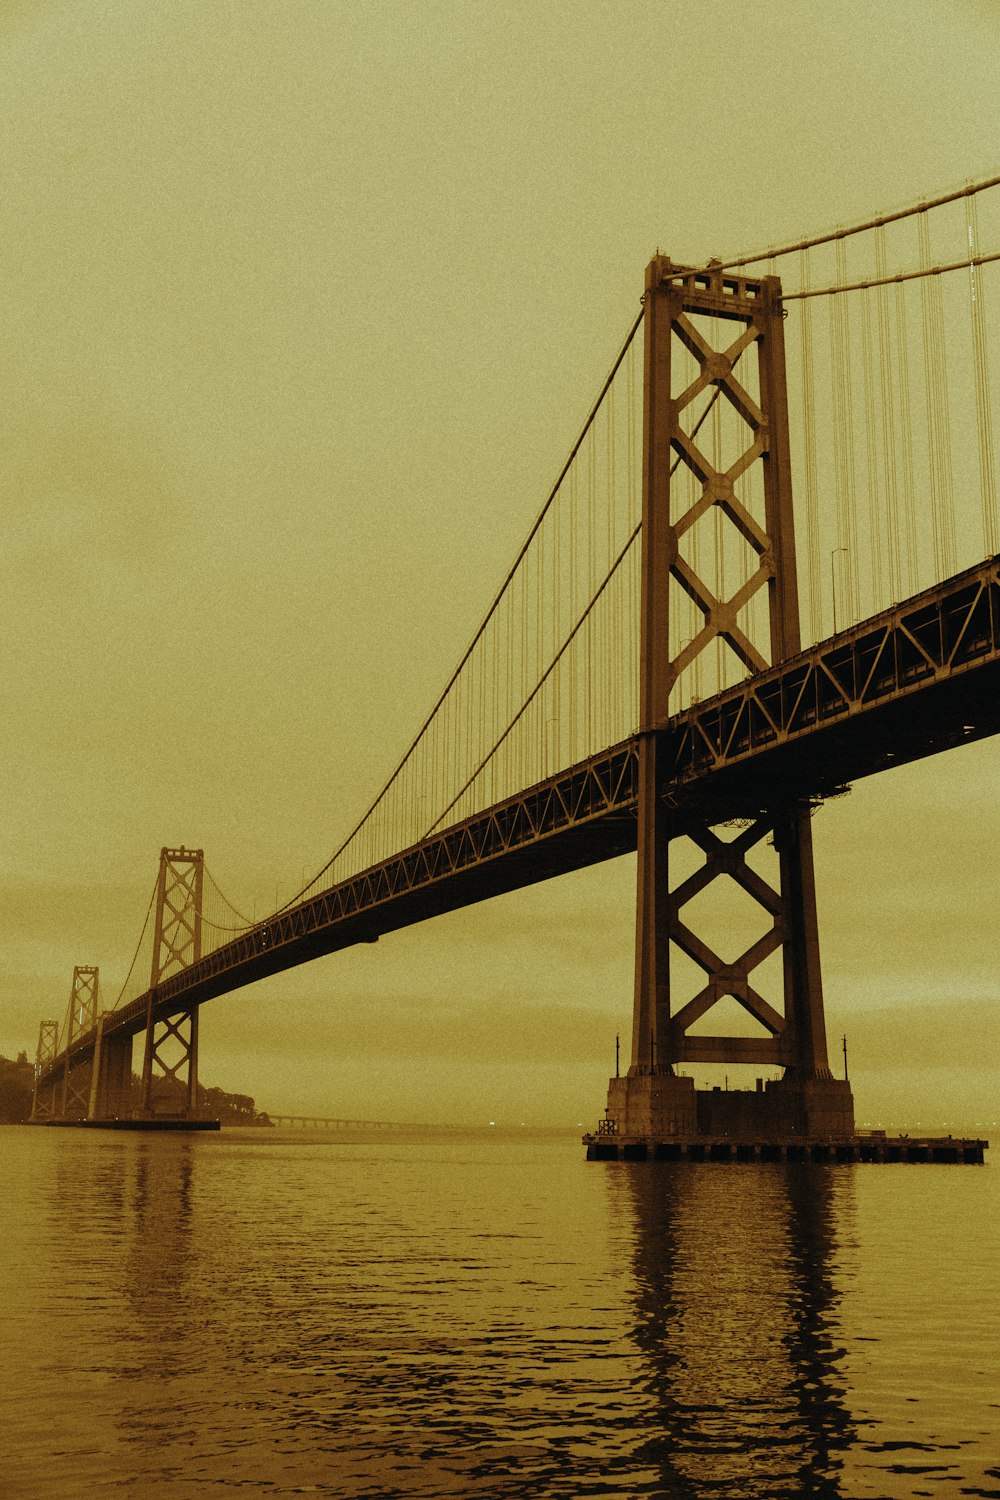 Golden Gate Bridge in fotografia in scala di grigi